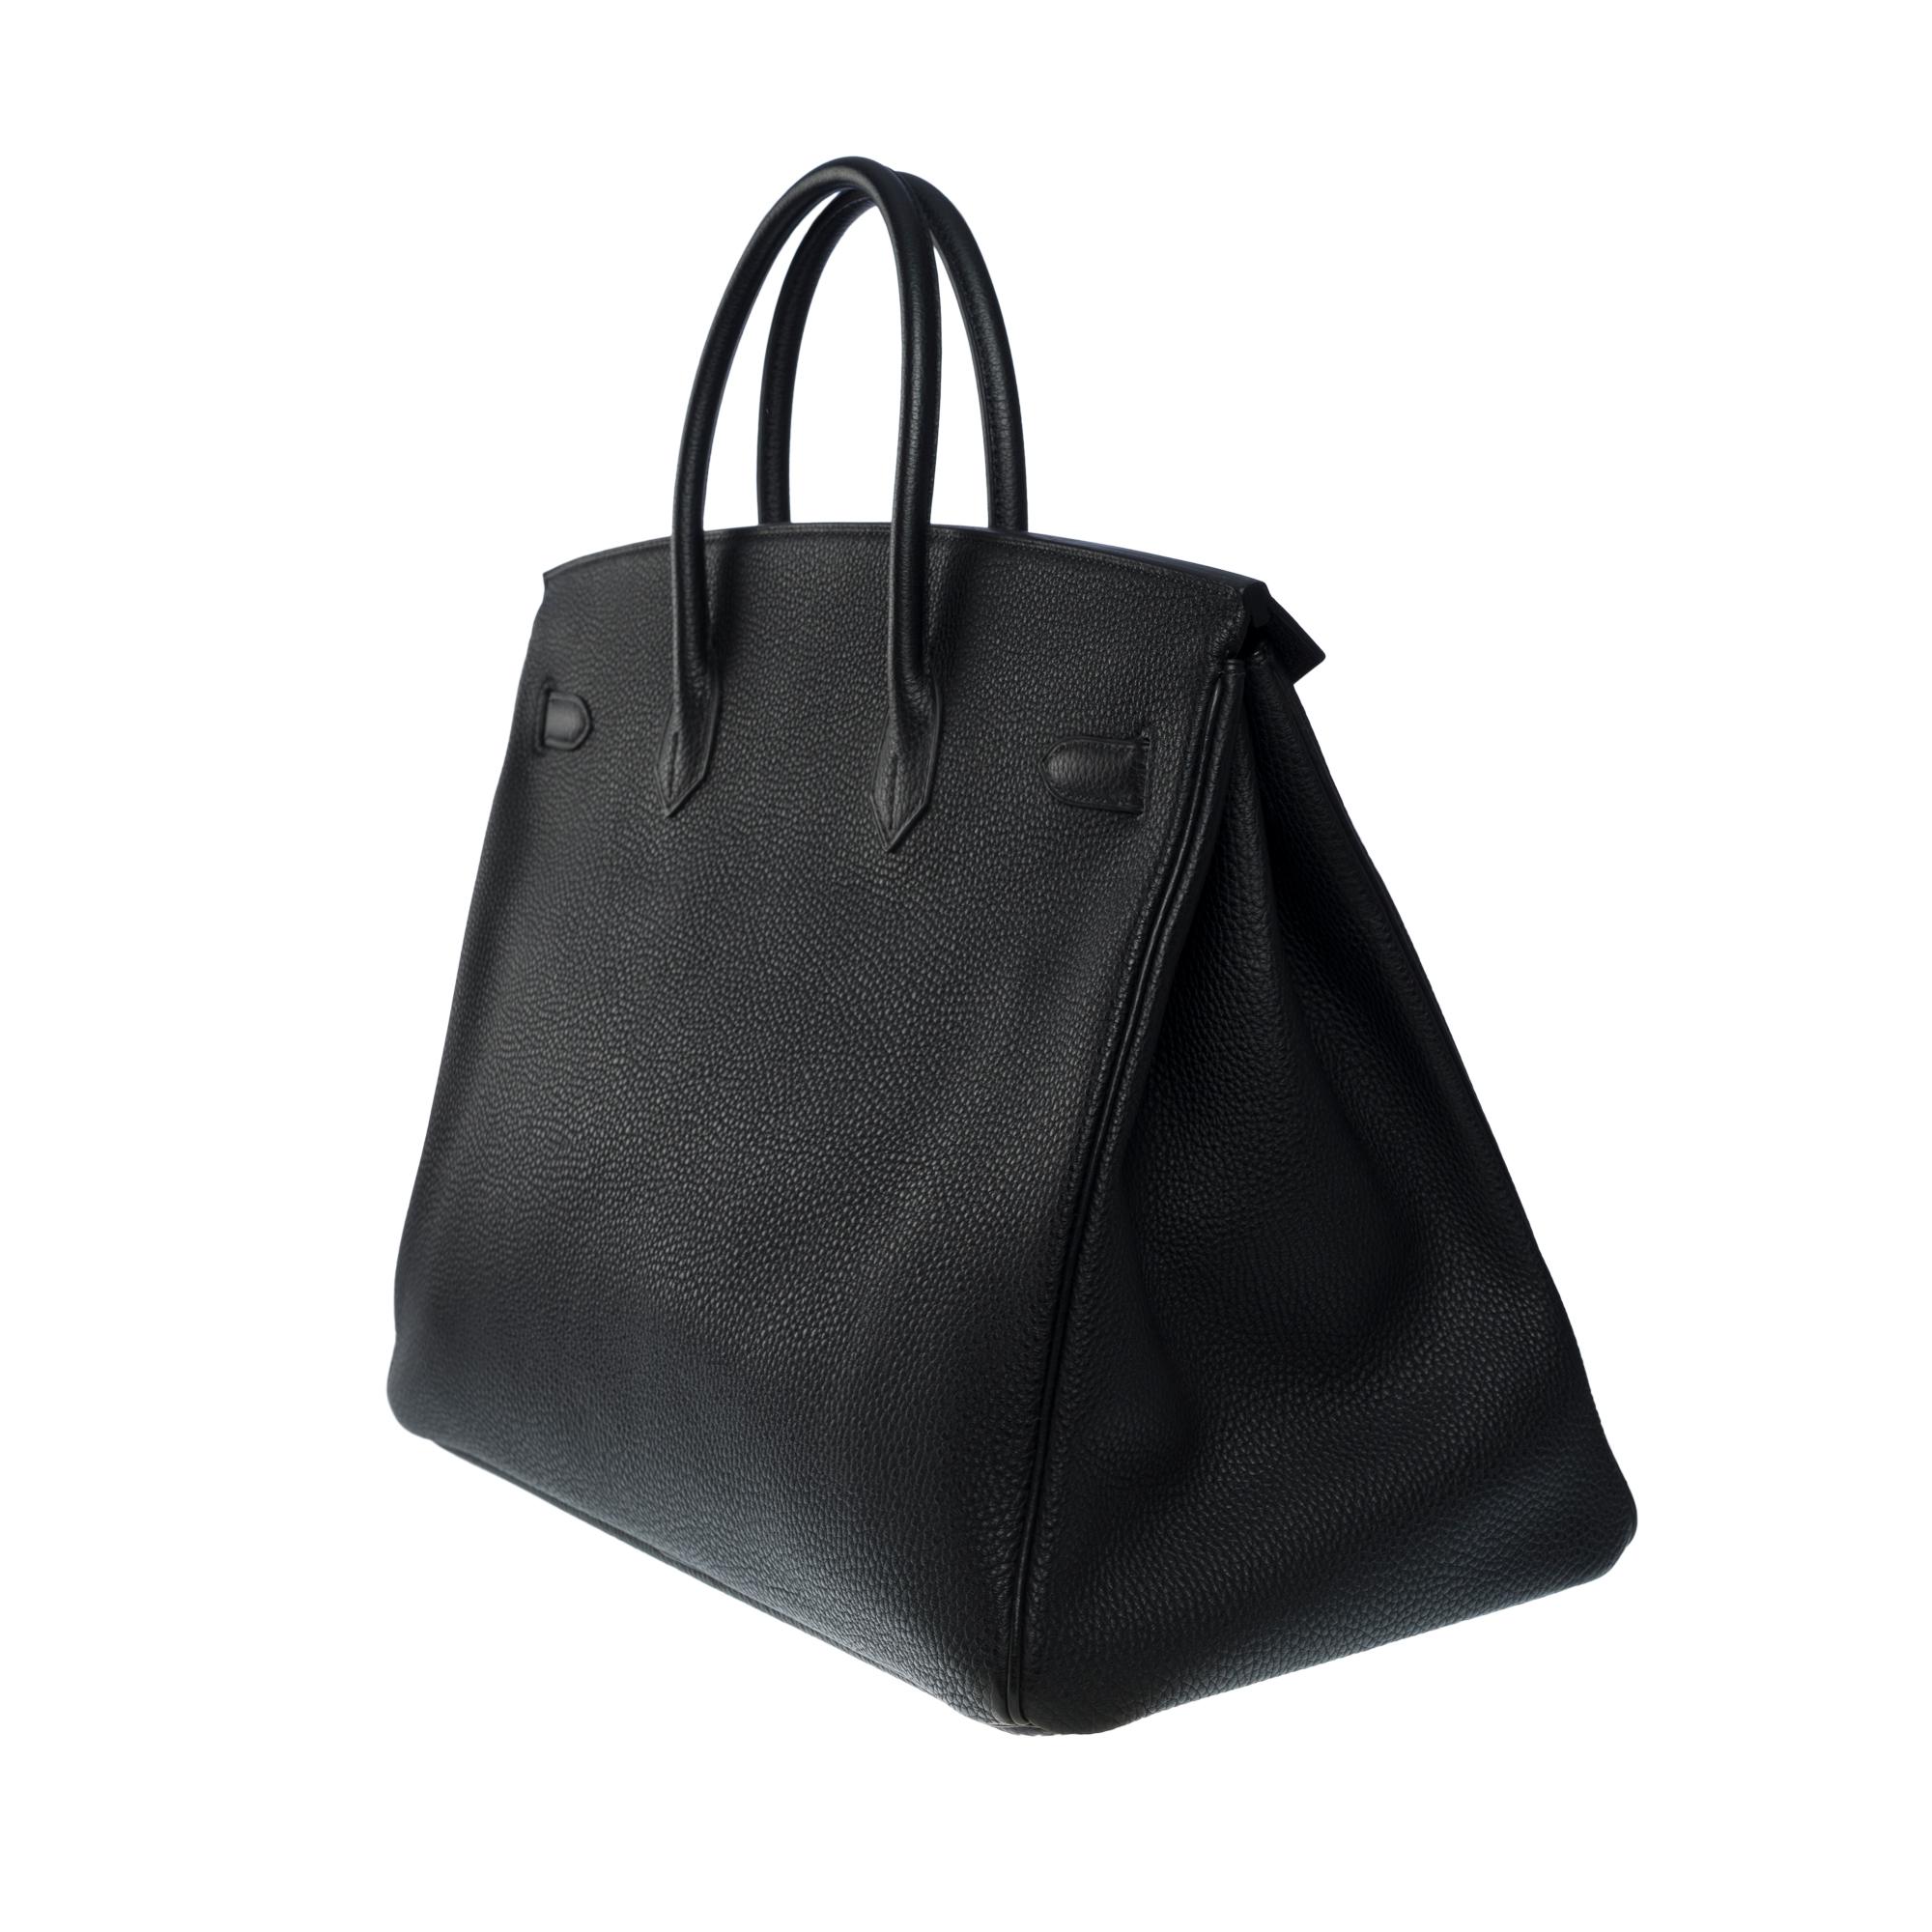 Superbe sac à main Hermès Birkin 40 cm en cuir togo noir, SHW 1